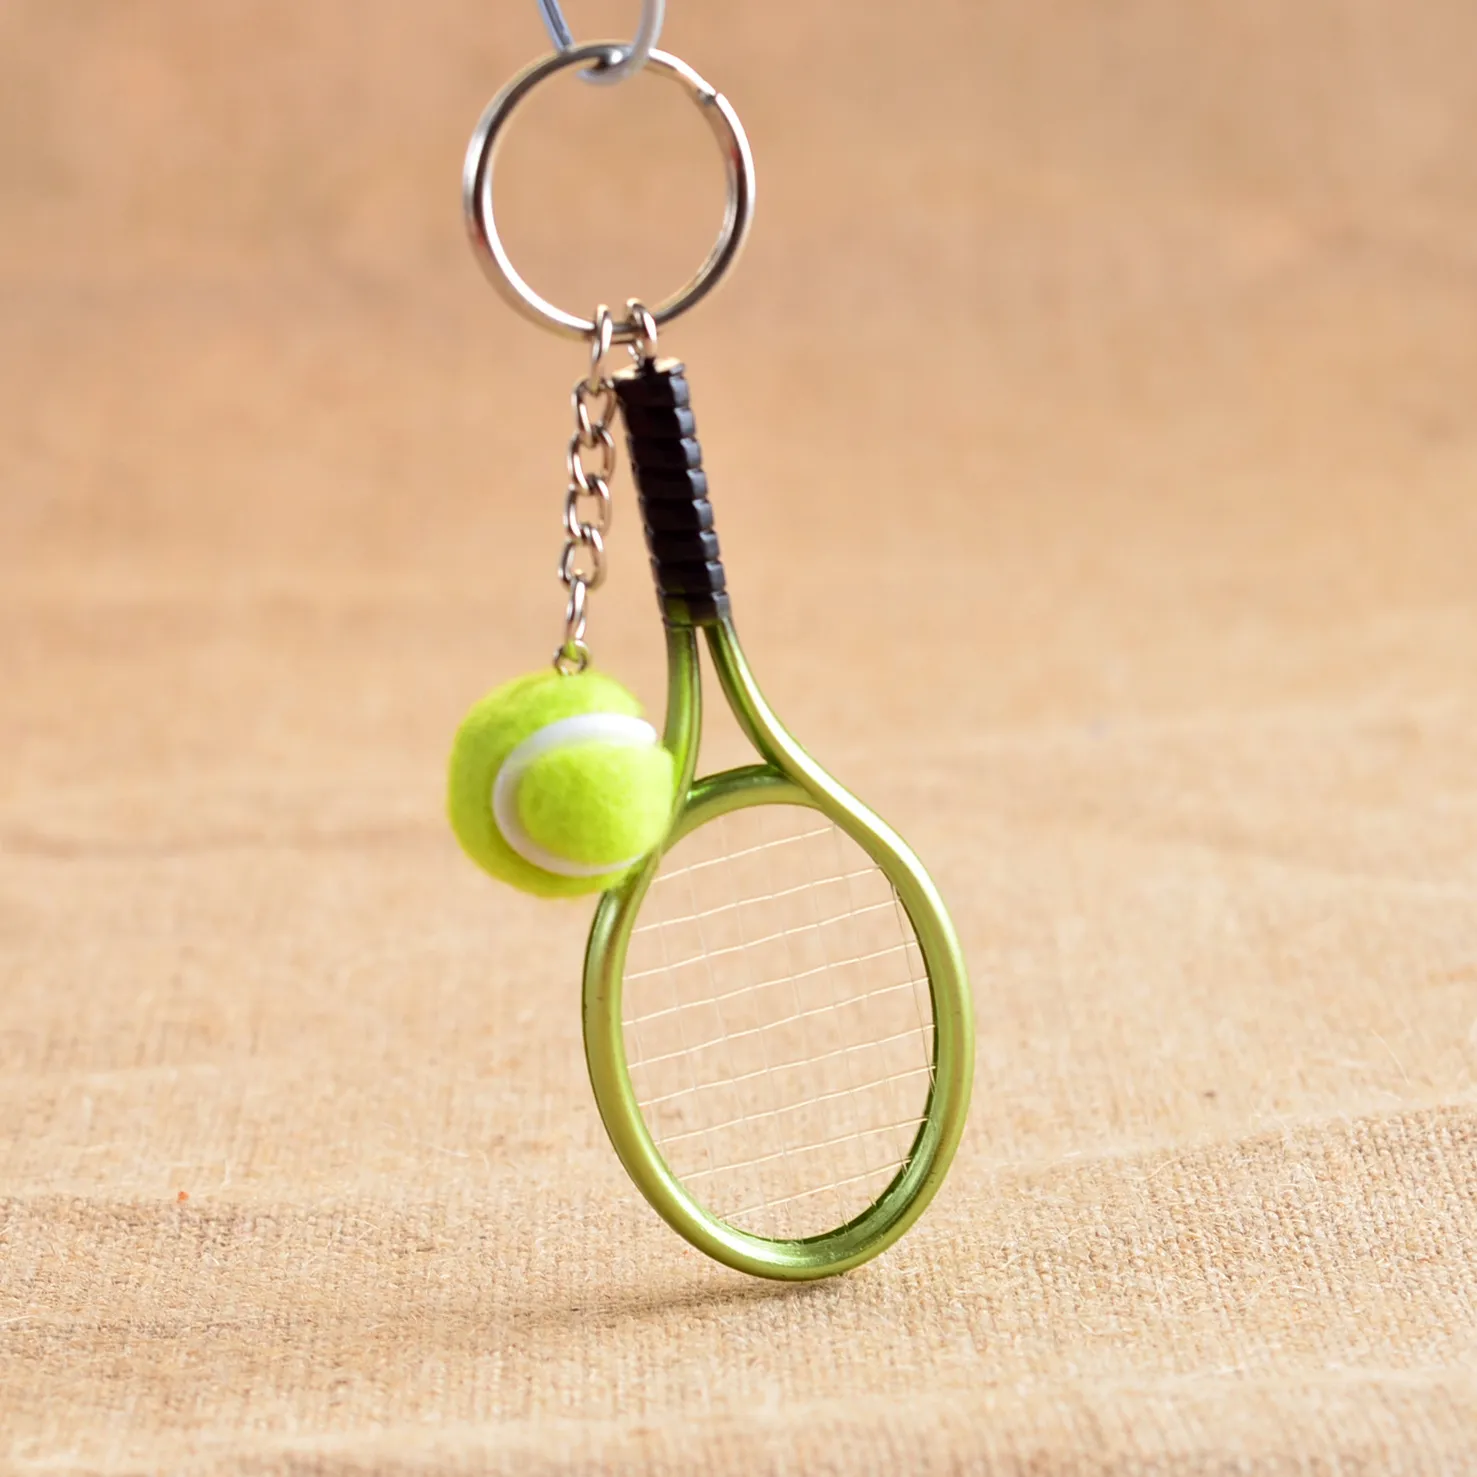 Nuovo arrivo Mini racchetta da tennis portachiavi personalità creativa pubblicità piccoli regali R158 Arti e mestieri mescolano l'ordine secondo le tue esigenze